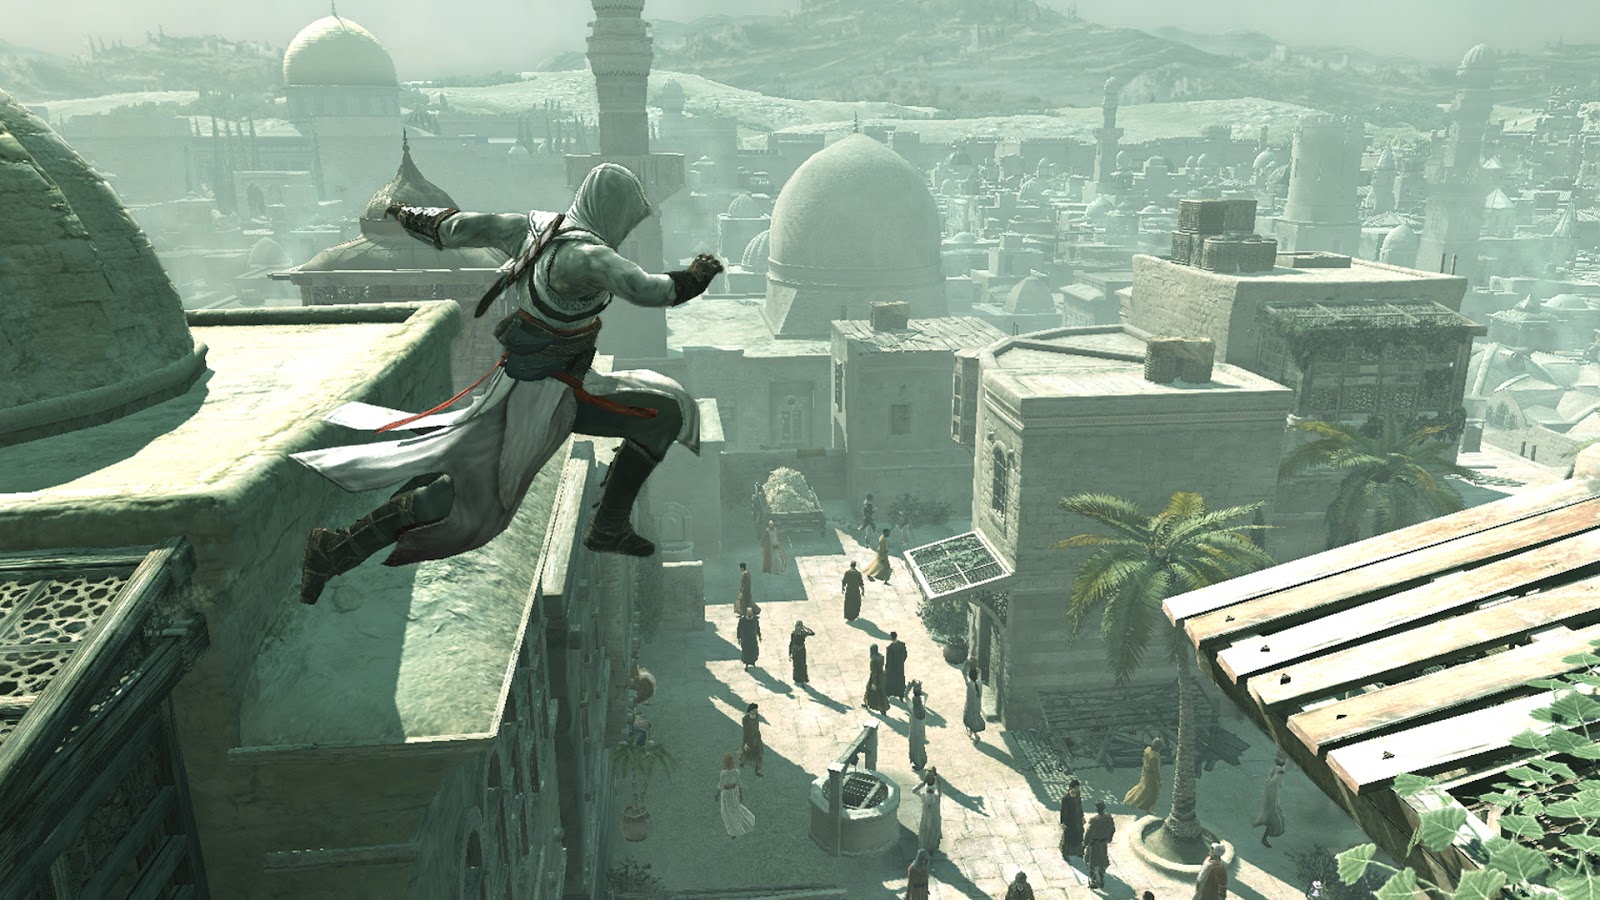 Ditadura militar no Brasil será cenário de HQ do jogo Assassin's Creed -  Correio de Carajás